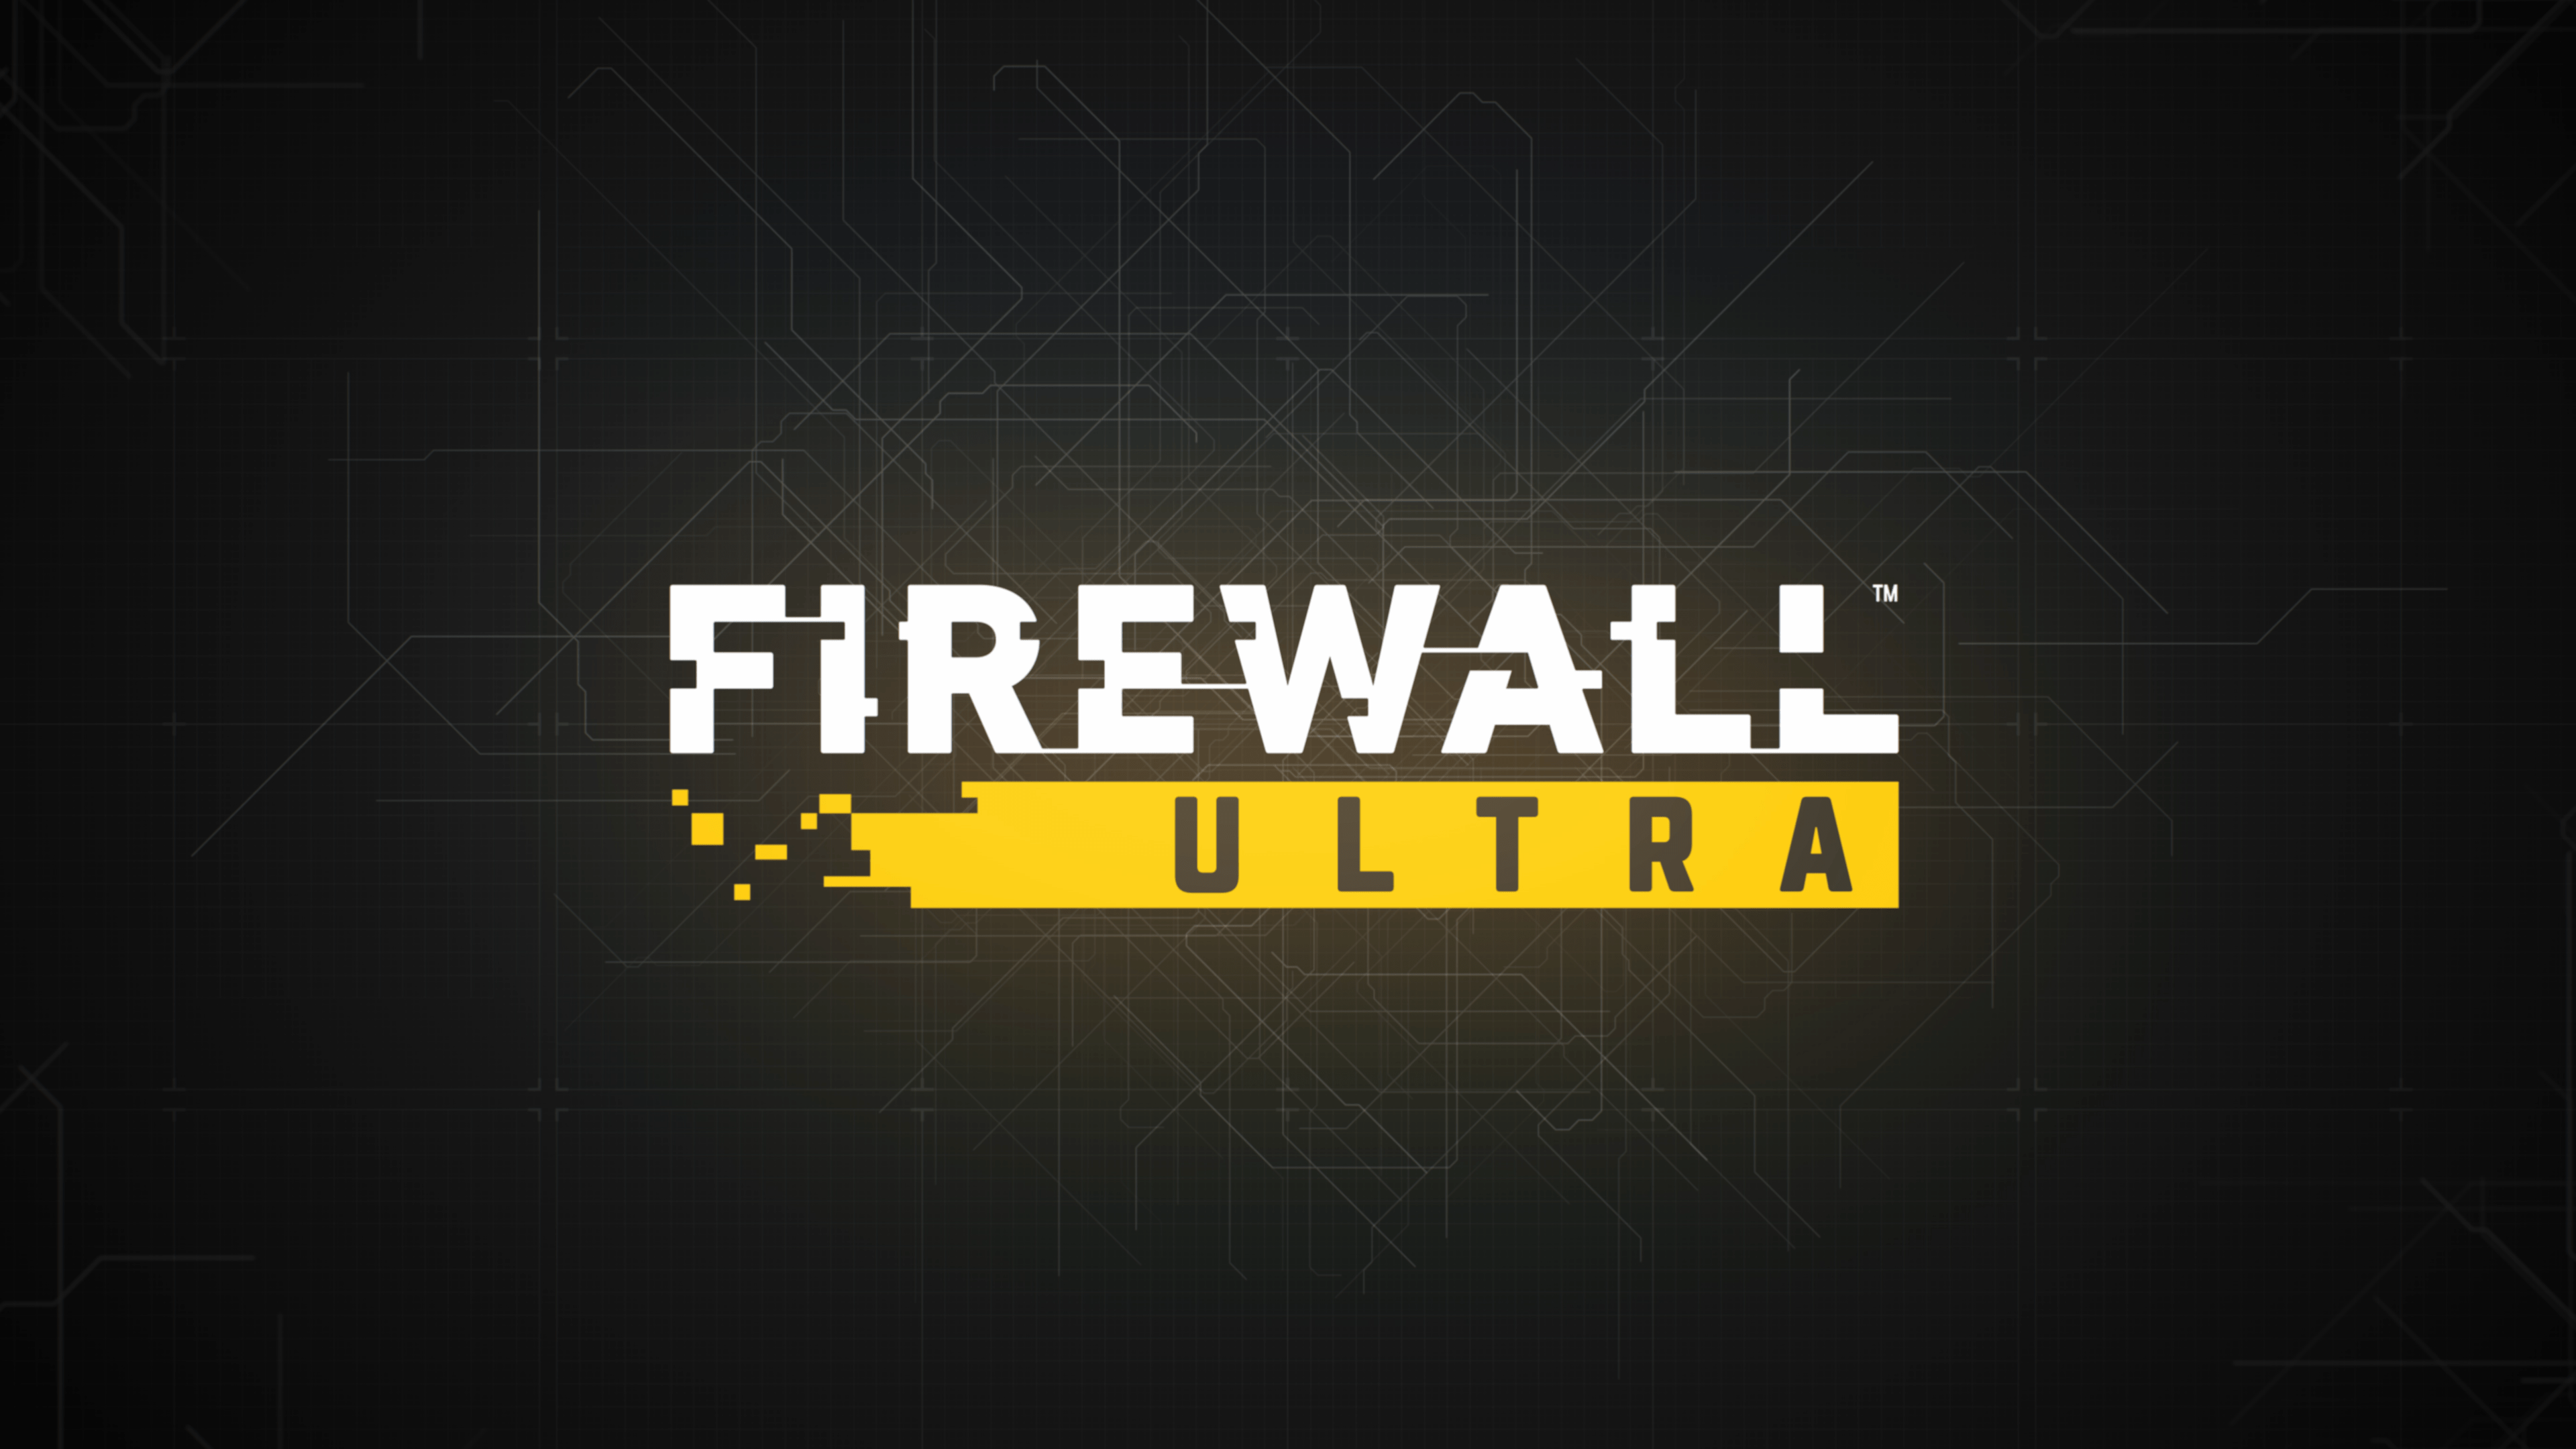 Firewall Ultra: primeiros detalhes do gameplay do jogo de tiro para PS VR2  – PlayStation.Blog BR